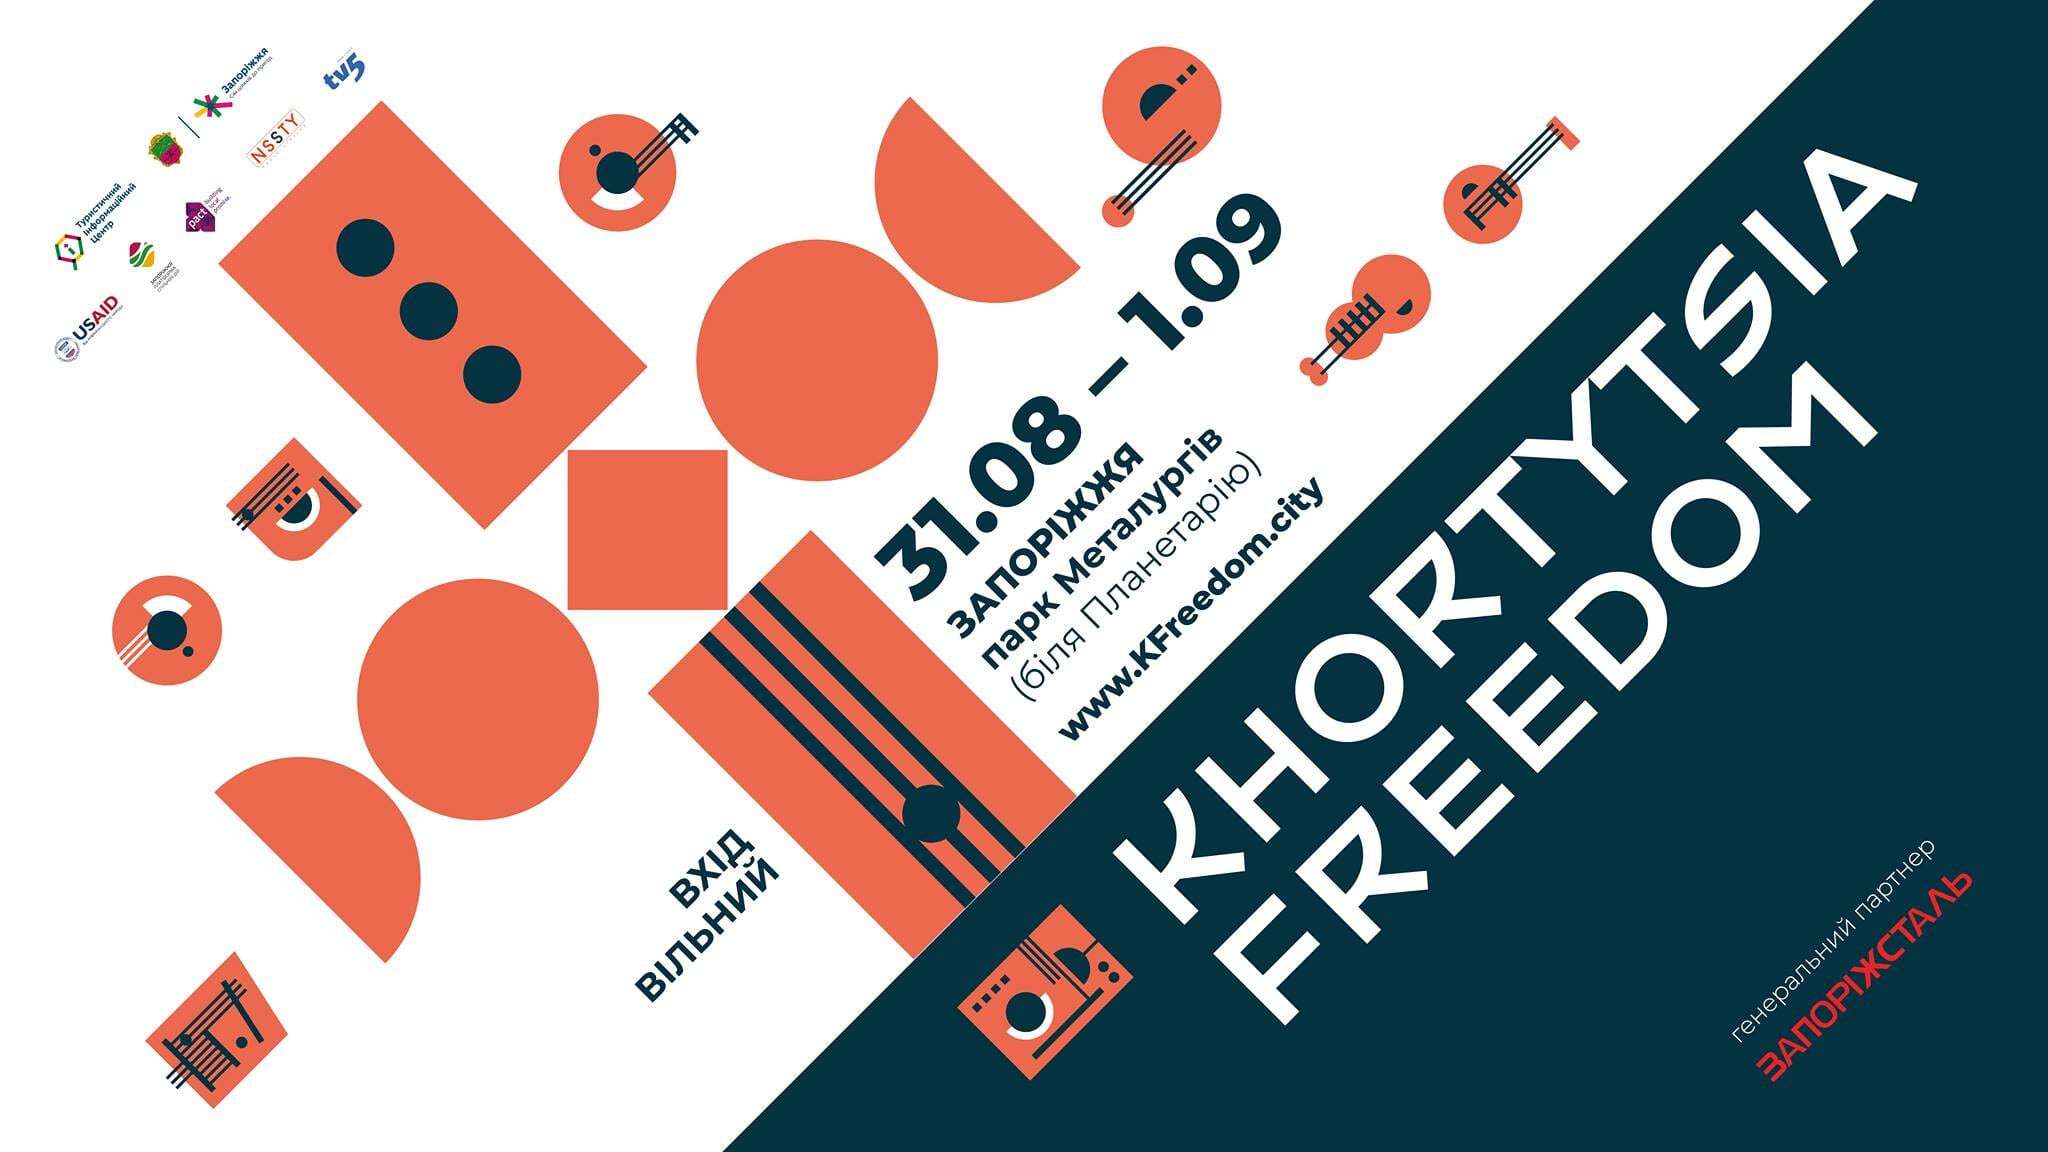 Днепряне могут бесплатно побывать на Khortytsia Freedom - 2019